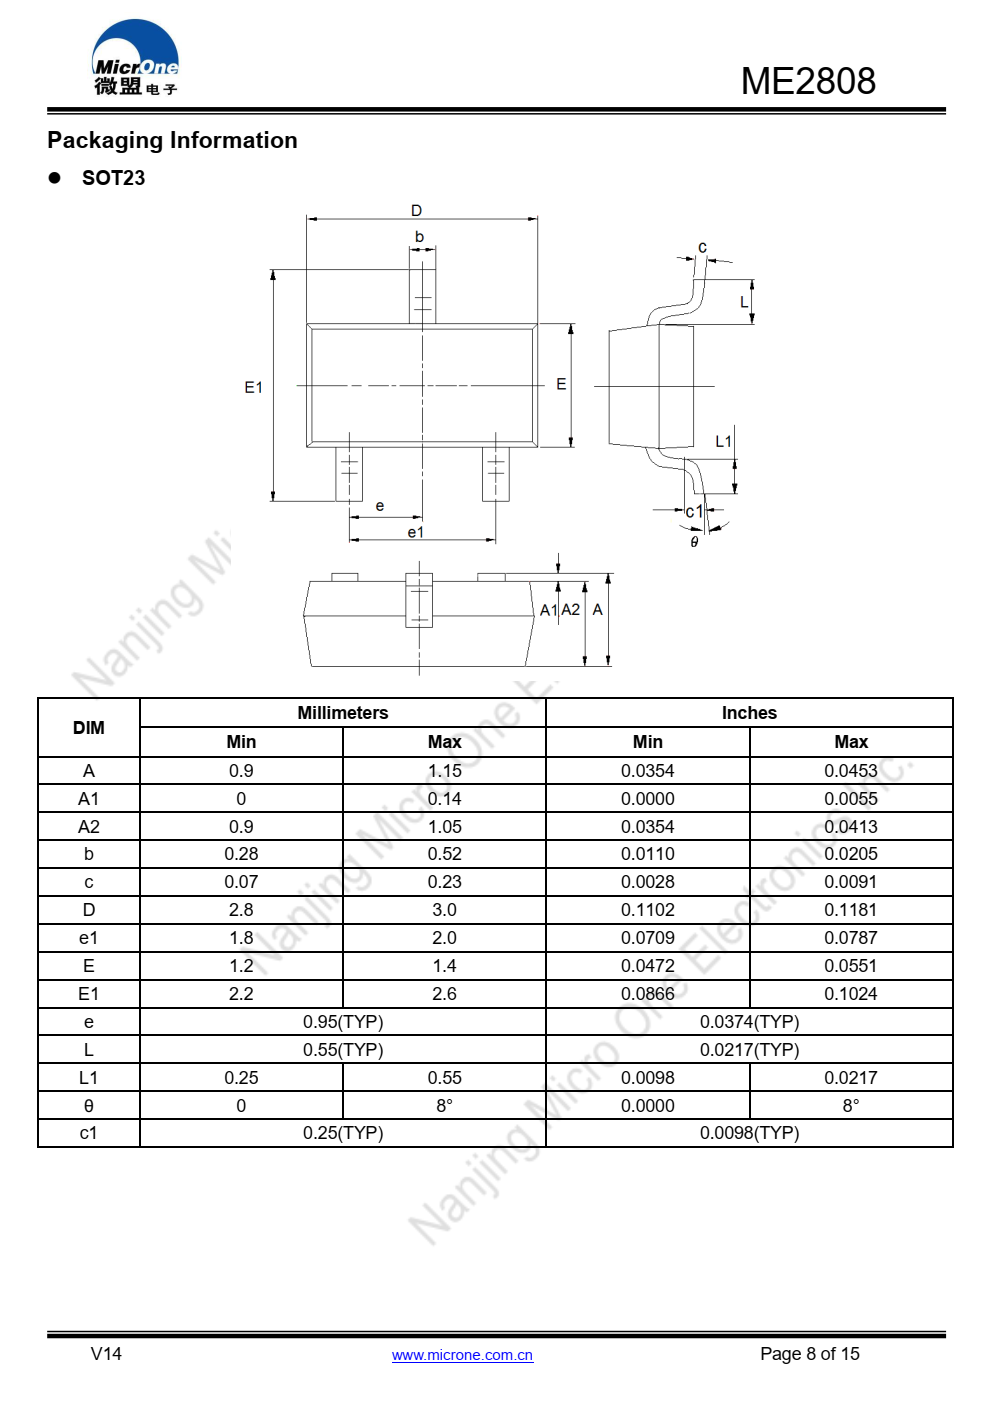 ME2808系列是一套三端低压开关  NMOS中实现的电源电压检测器  技术系列中的每个电压检测器